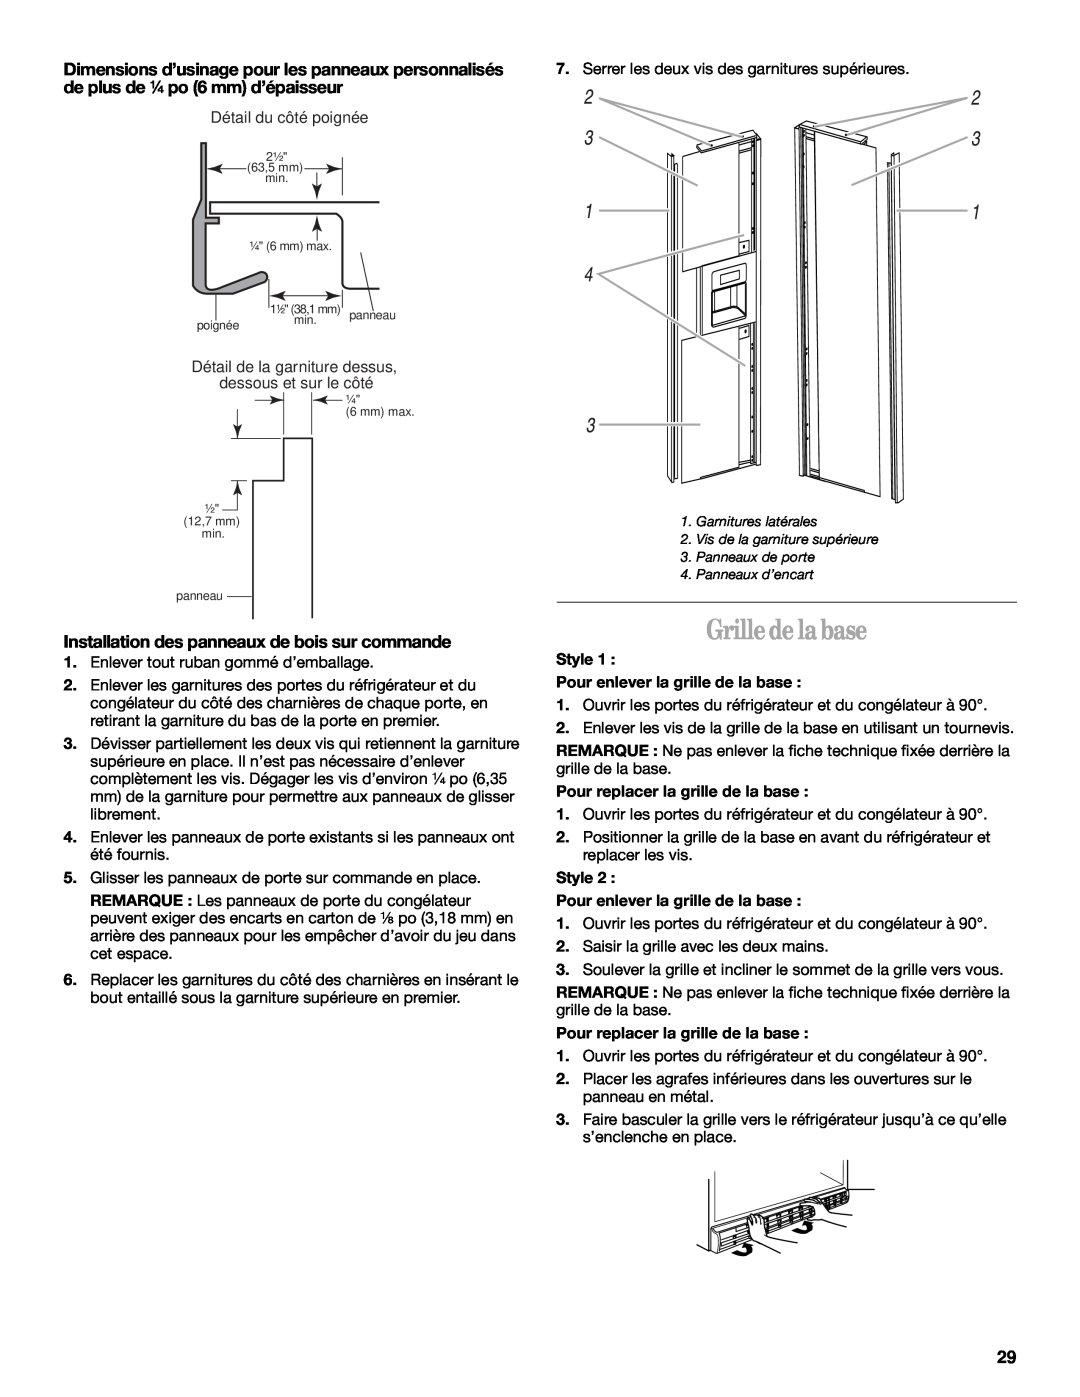 Whirlpool GC5SHGXKB00 manual Grille de la base, Installation des panneaux de bois sur commande 